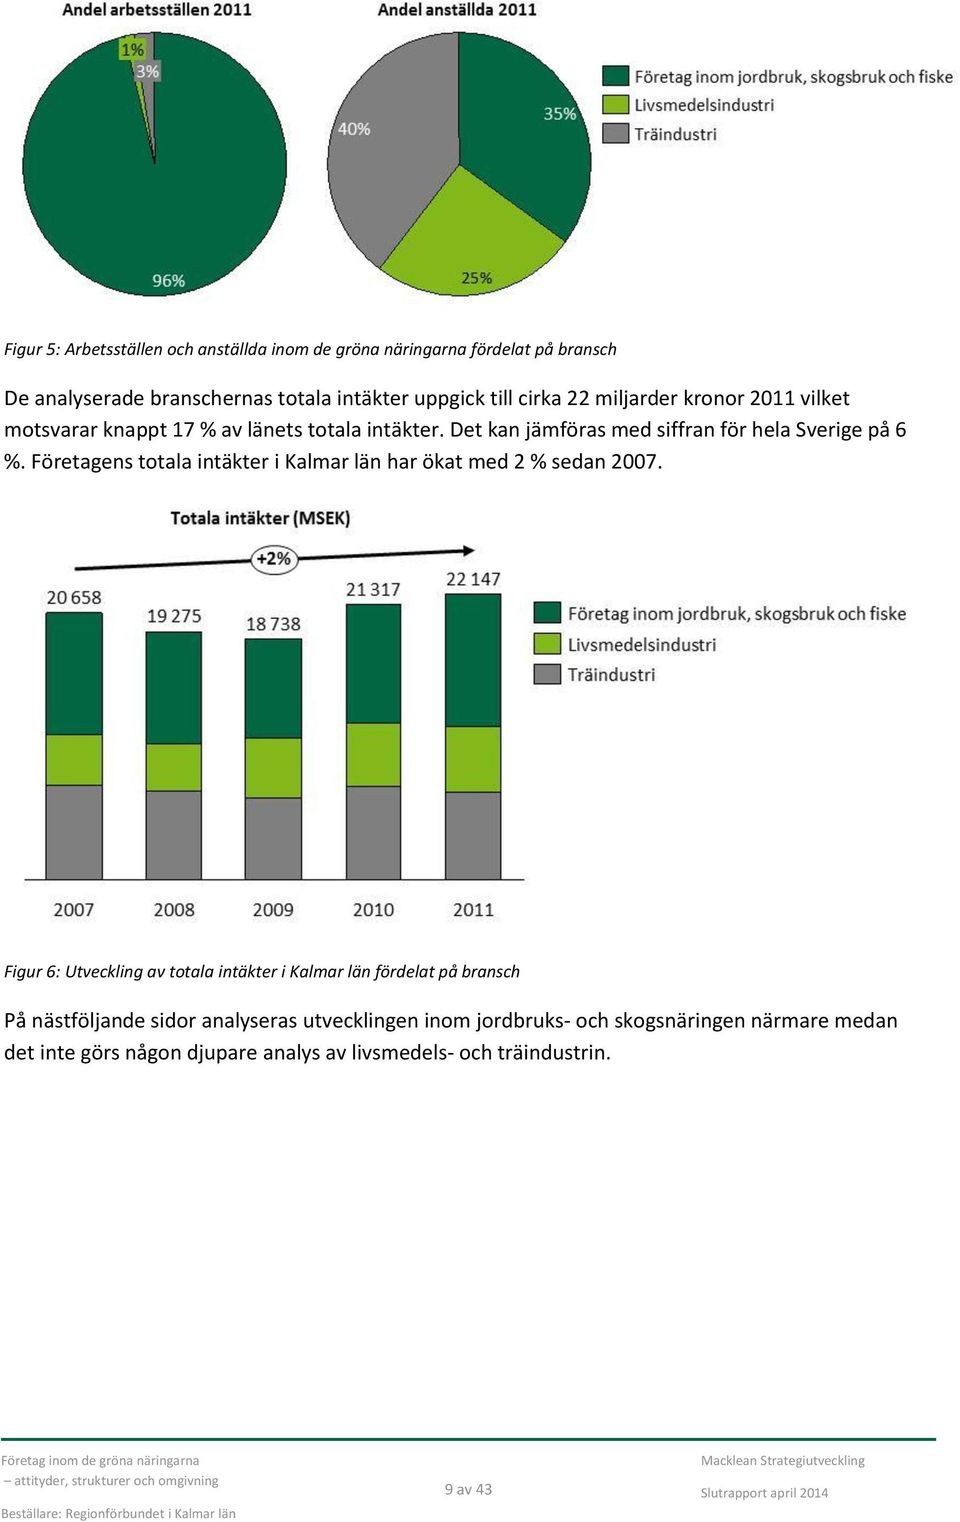 Företagens totala intäkter i Kalmar län har ökat med 2 % sedan 2007.